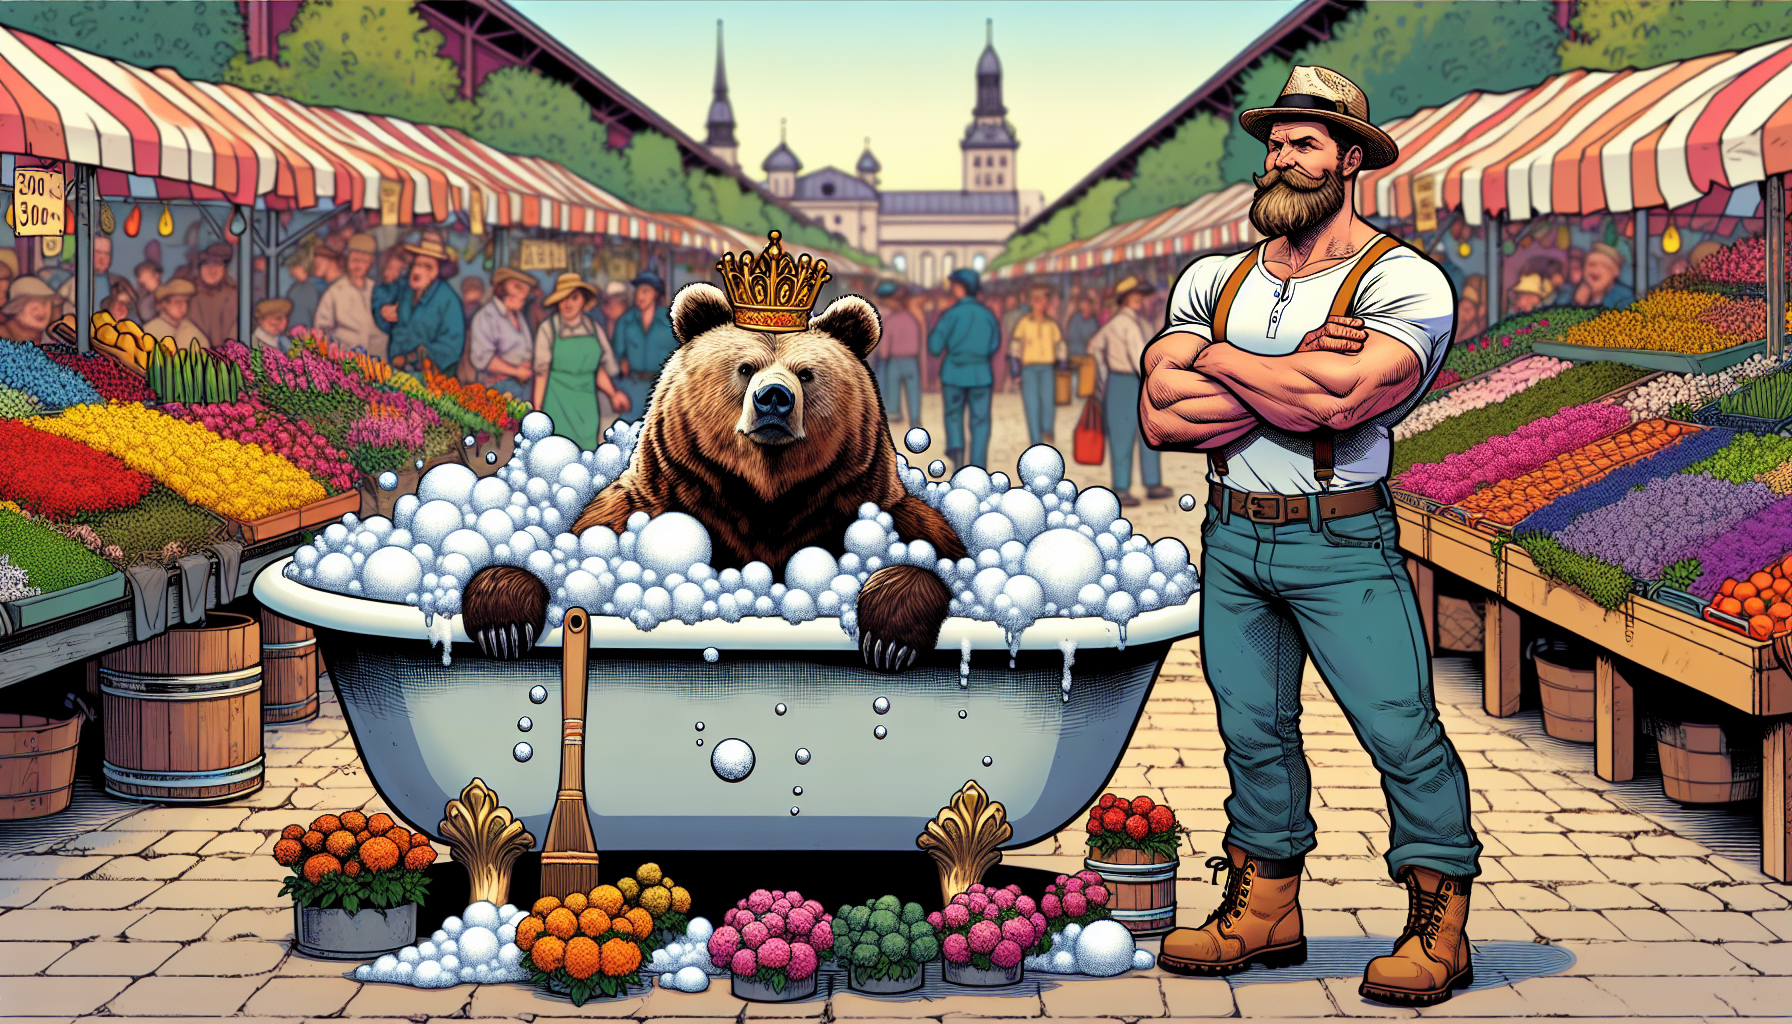 Ein Mann in einer Badewanne neben einem Bären auf einem Markt.